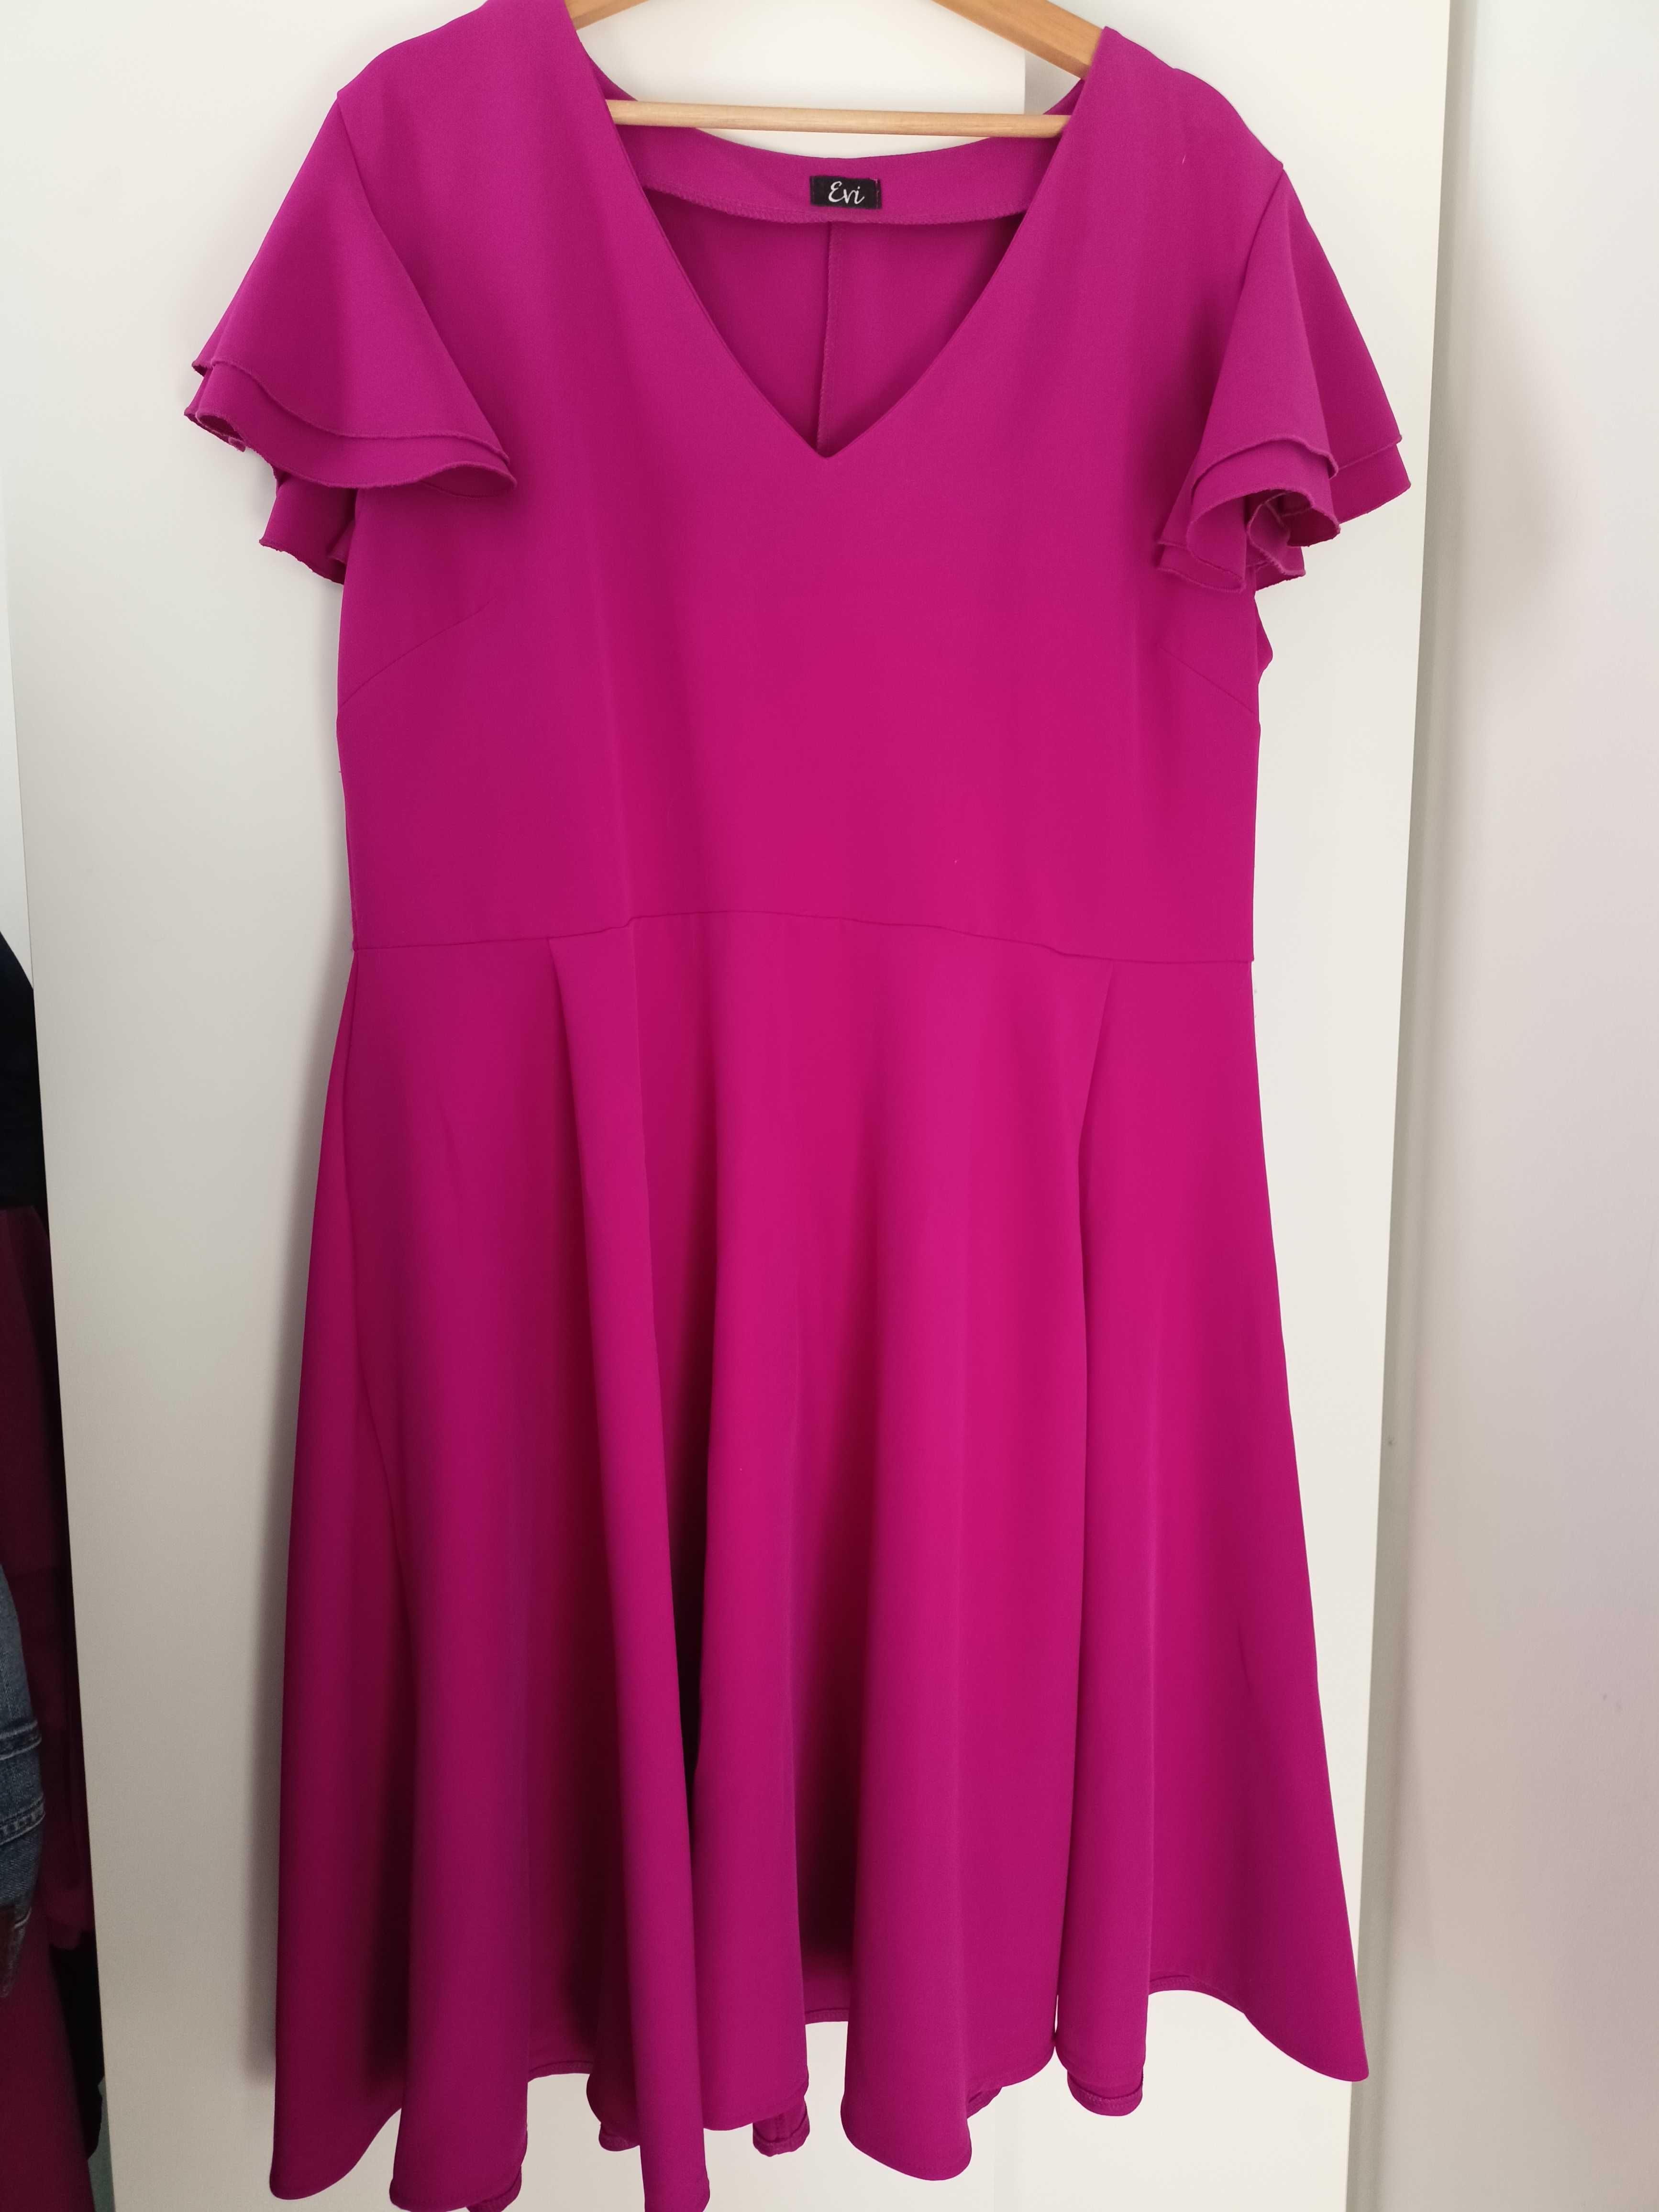 Elegancka sukienka w fuksjowym, różowym kolorze